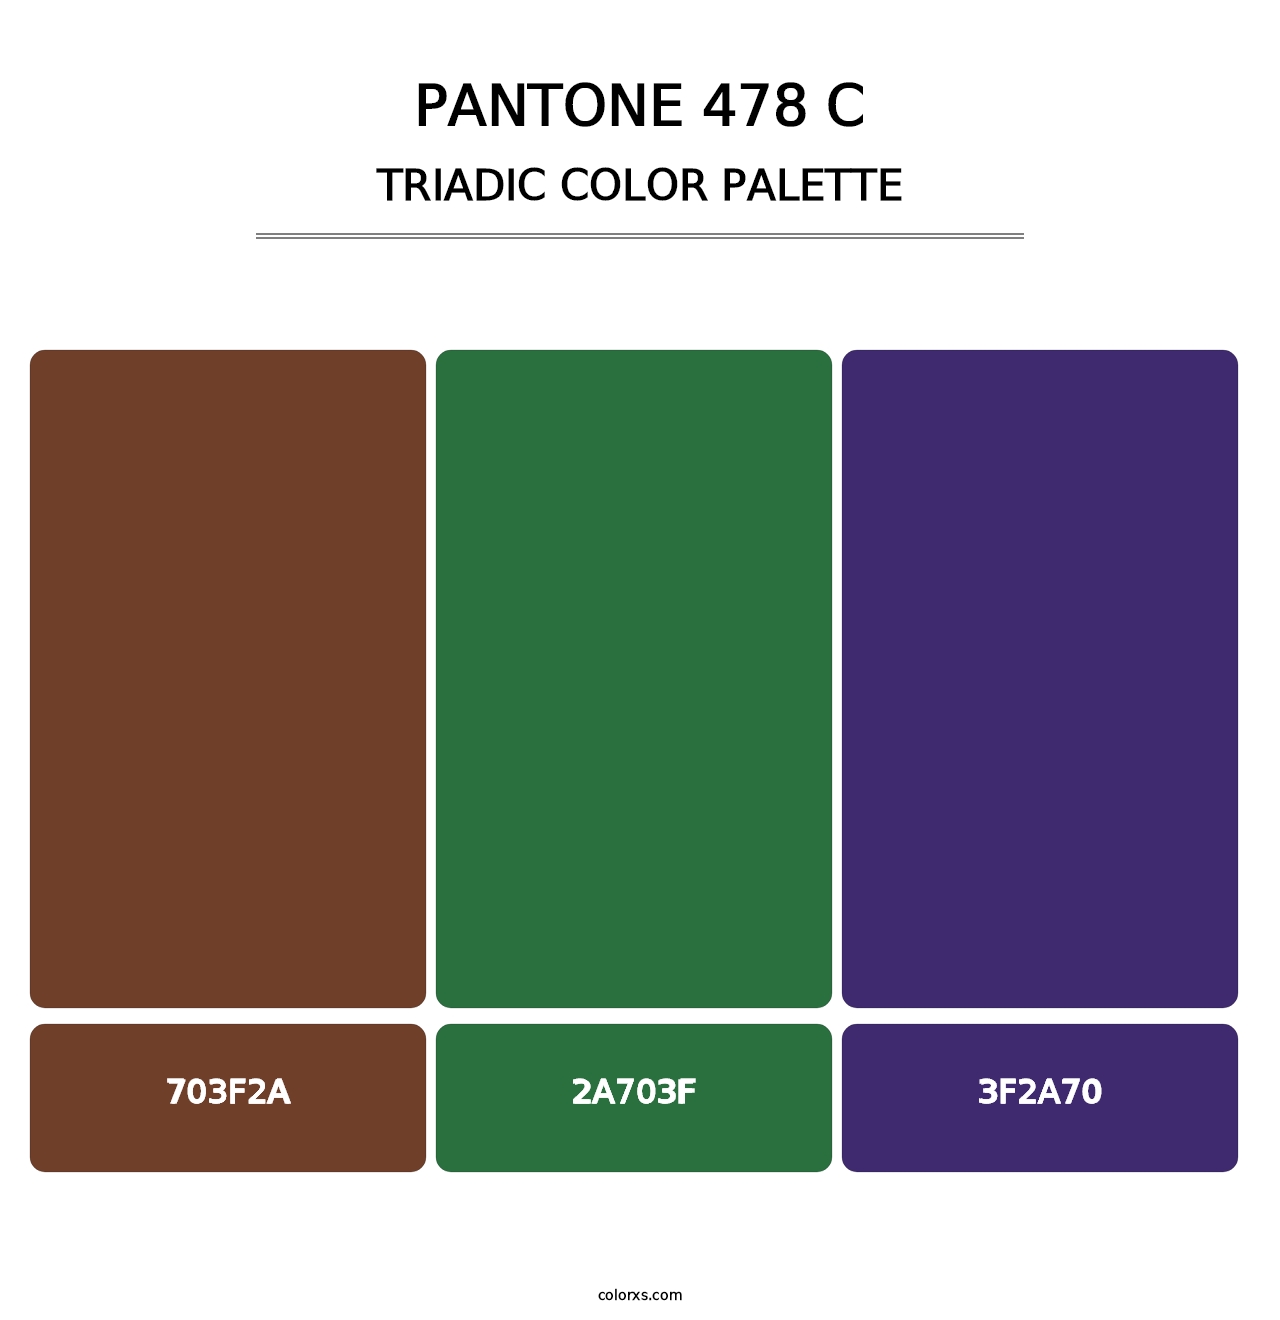 PANTONE 478 C - Triadic Color Palette